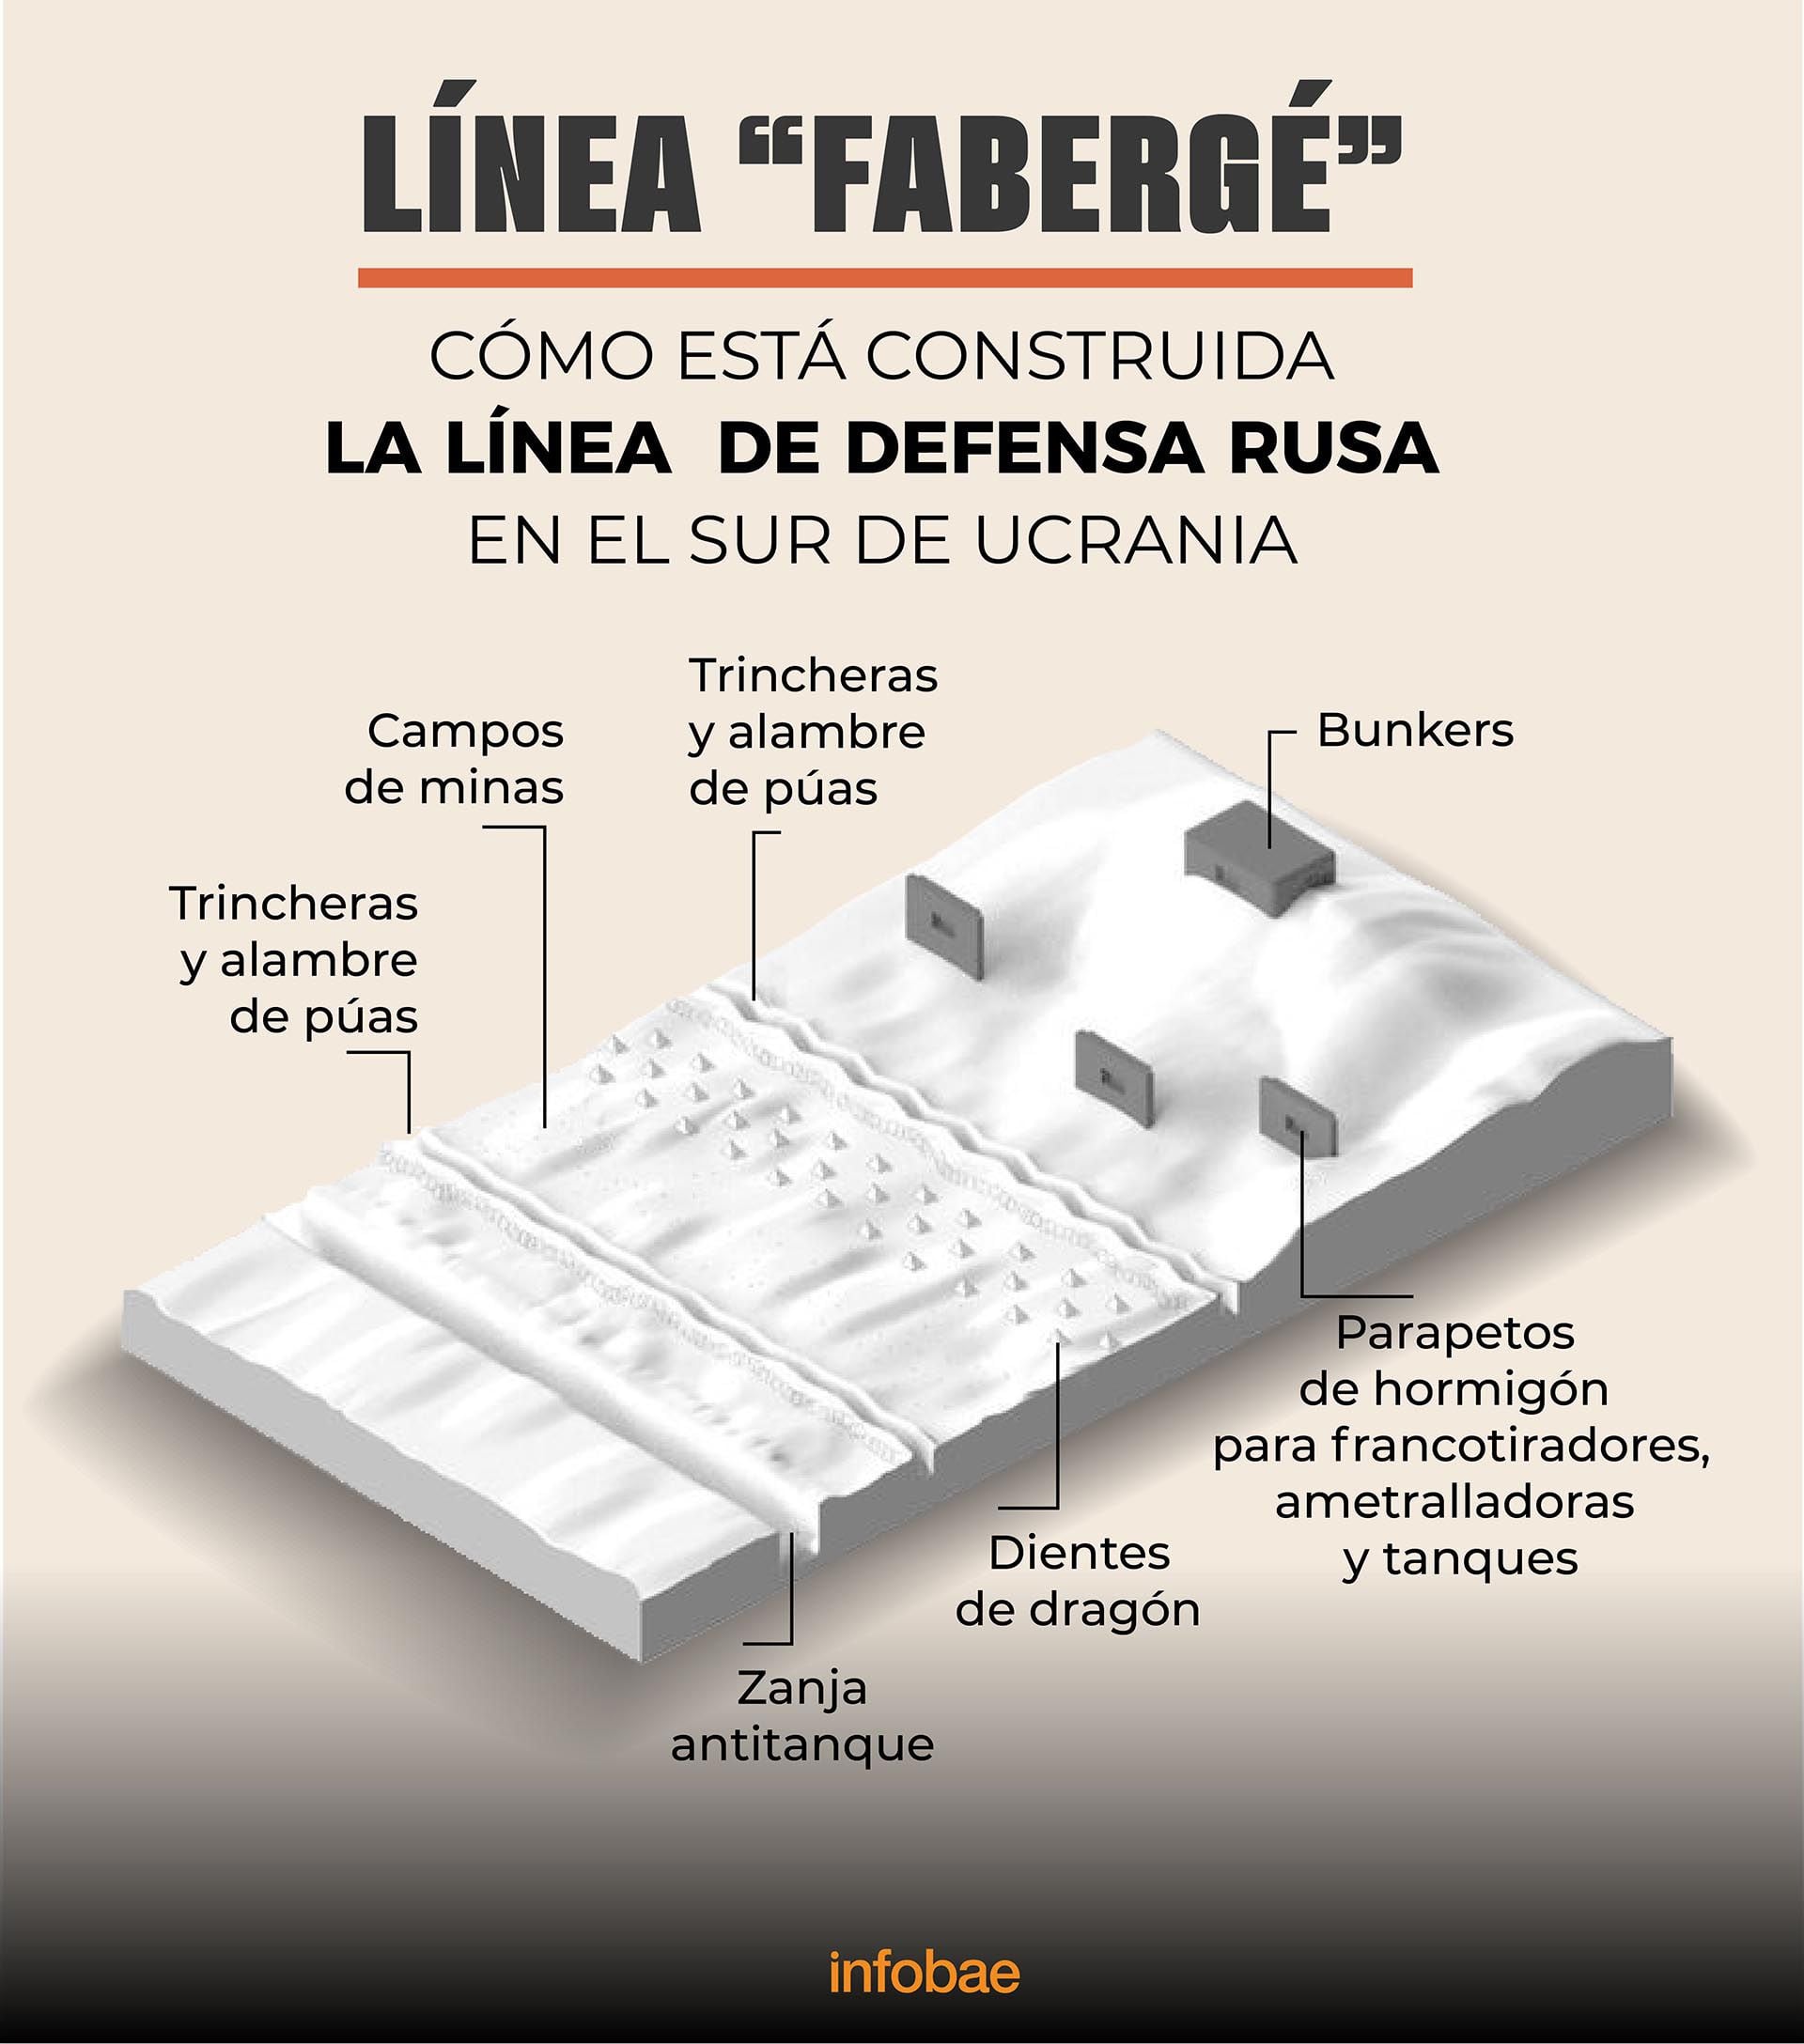 Infografía linea de defensa rusa linea de Fabergé